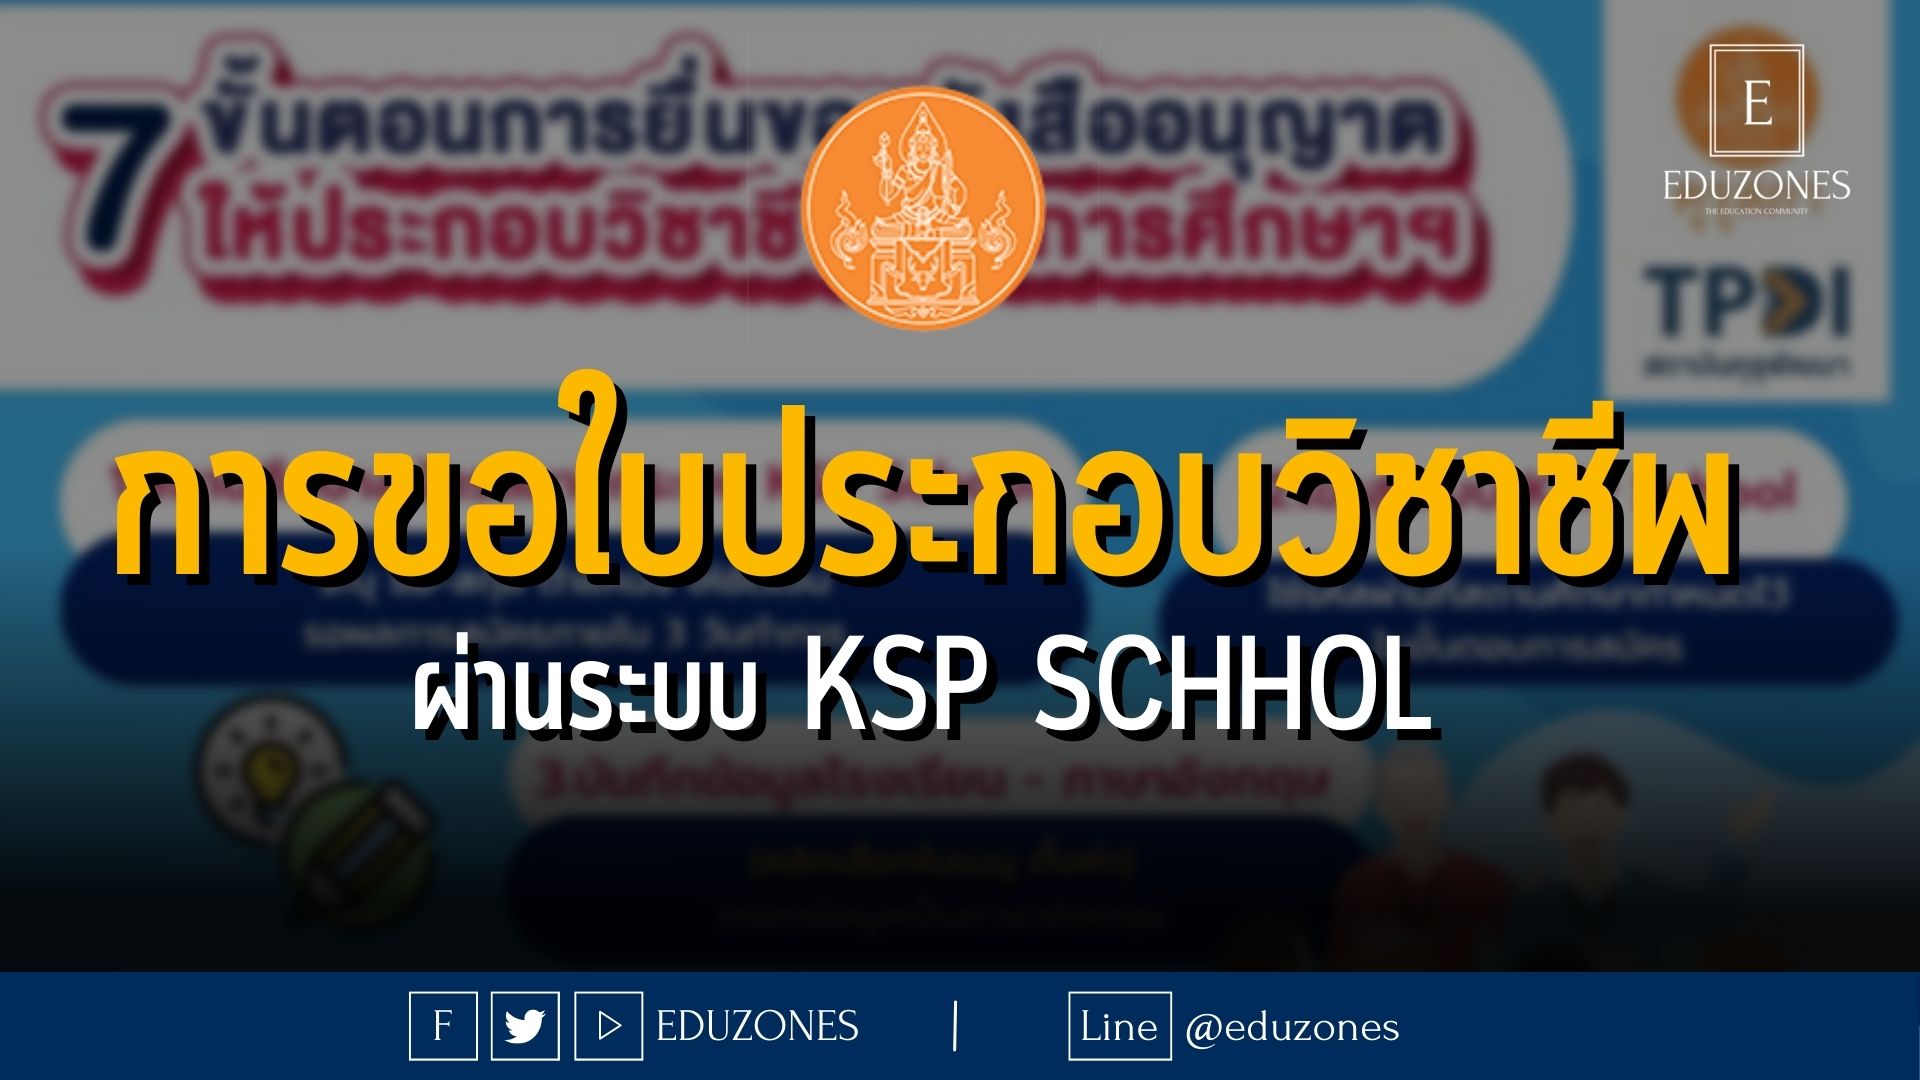 การขอใบประกอบวิชาชีพผ่านระบบ KSP School